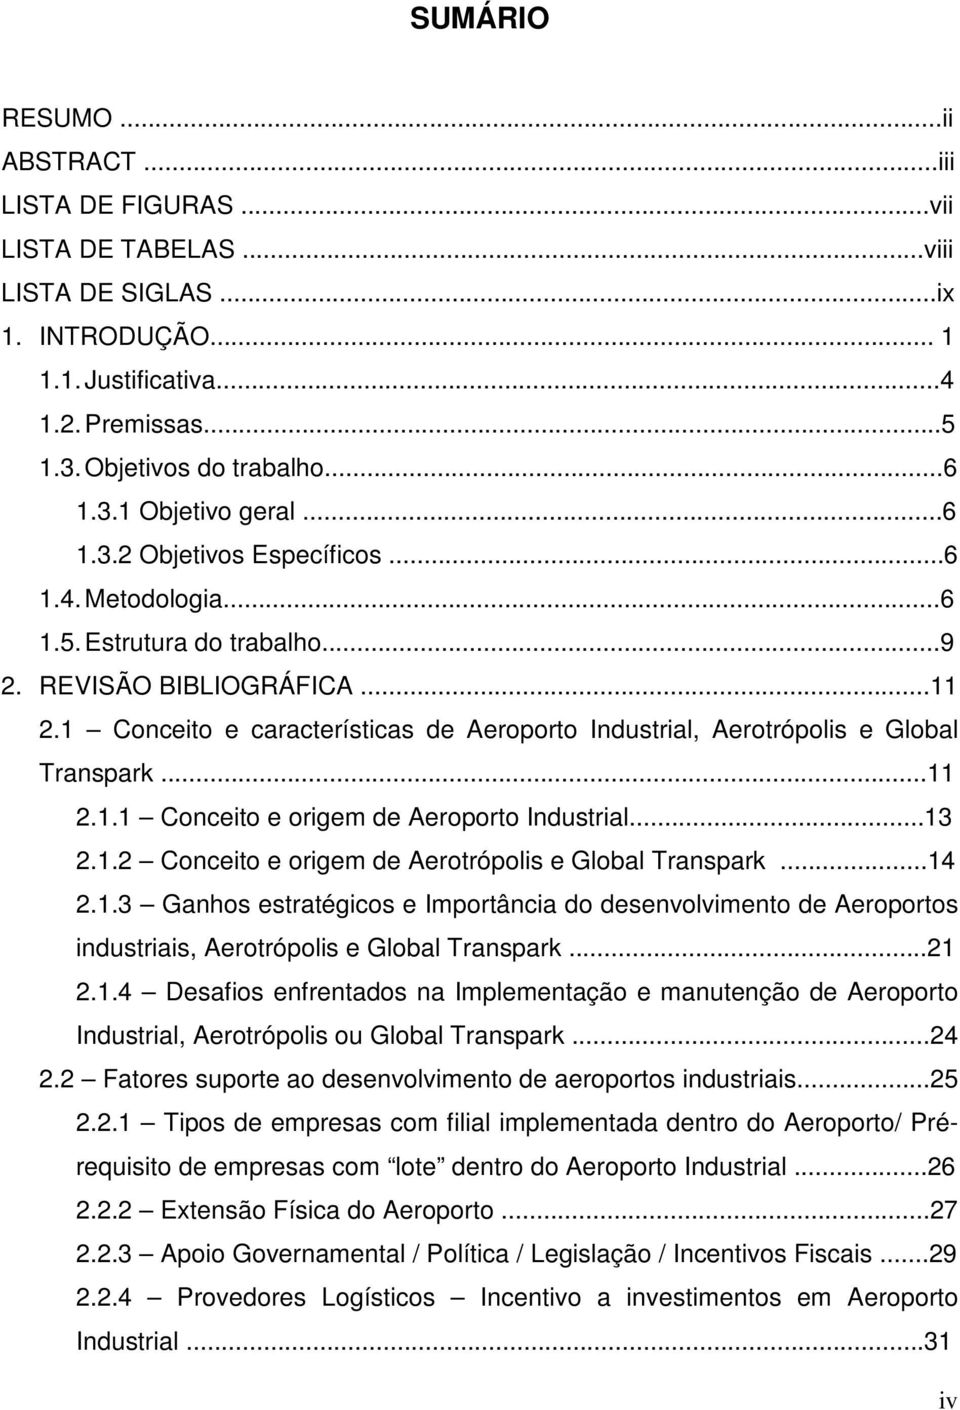 1 Conceito e características de Aeroporto Industrial, Aerotrópolis e Global Transpark...11 2.1.1 Conceito e origem de Aeroporto Industrial...13 2.1.2 Conceito e origem de Aerotrópolis e Global Transpark.